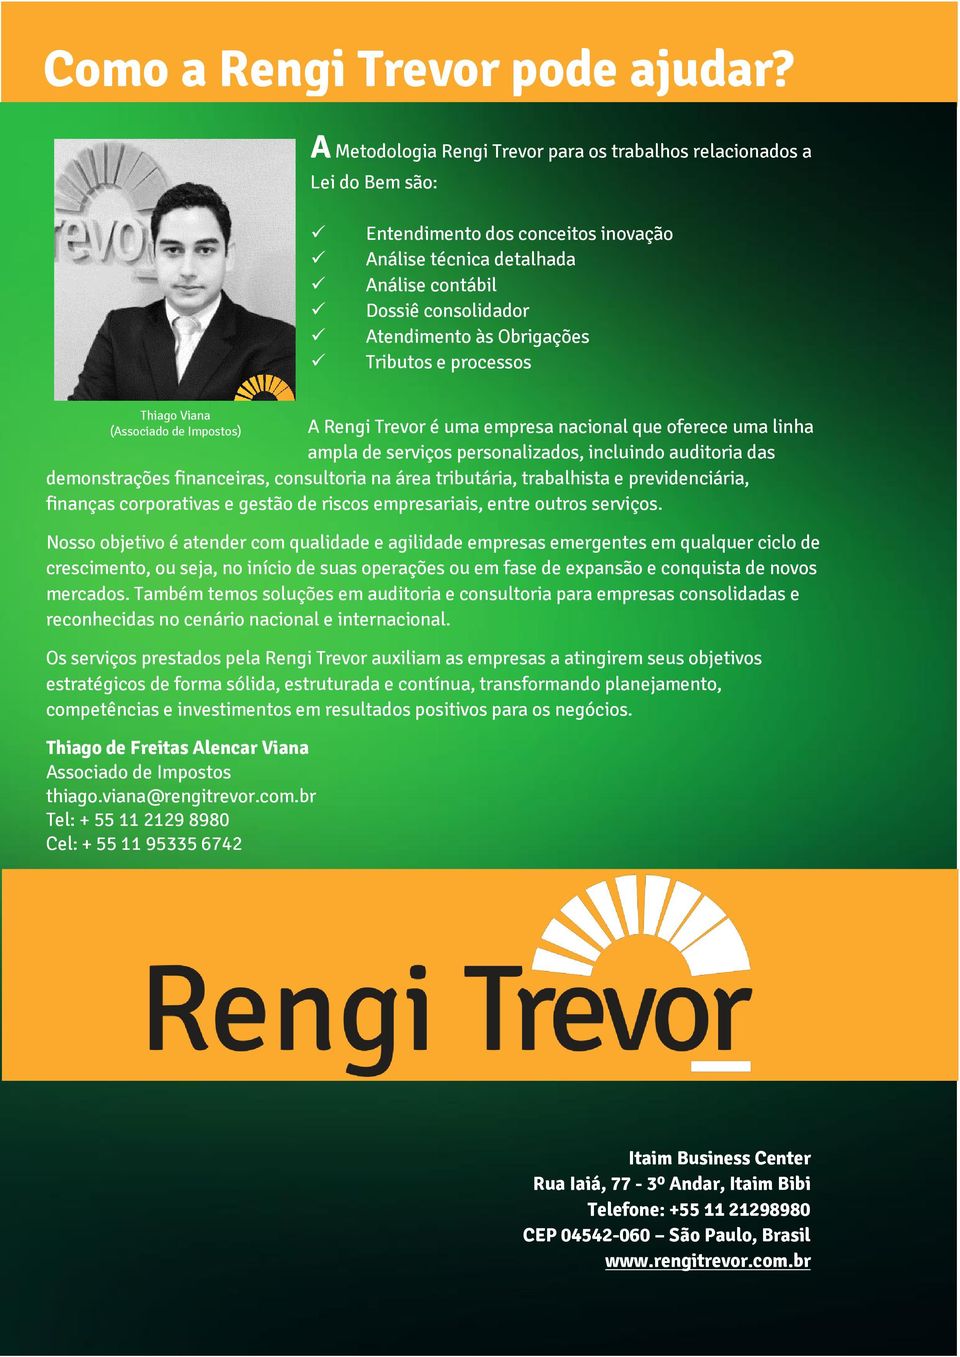 Obrigações Tributos e processos Thiago Viana (Associado de Impostos) A Rengi Trevor é uma empresa nacional que oferece uma linha ampla de serviços personalizados, incluindo auditoria das